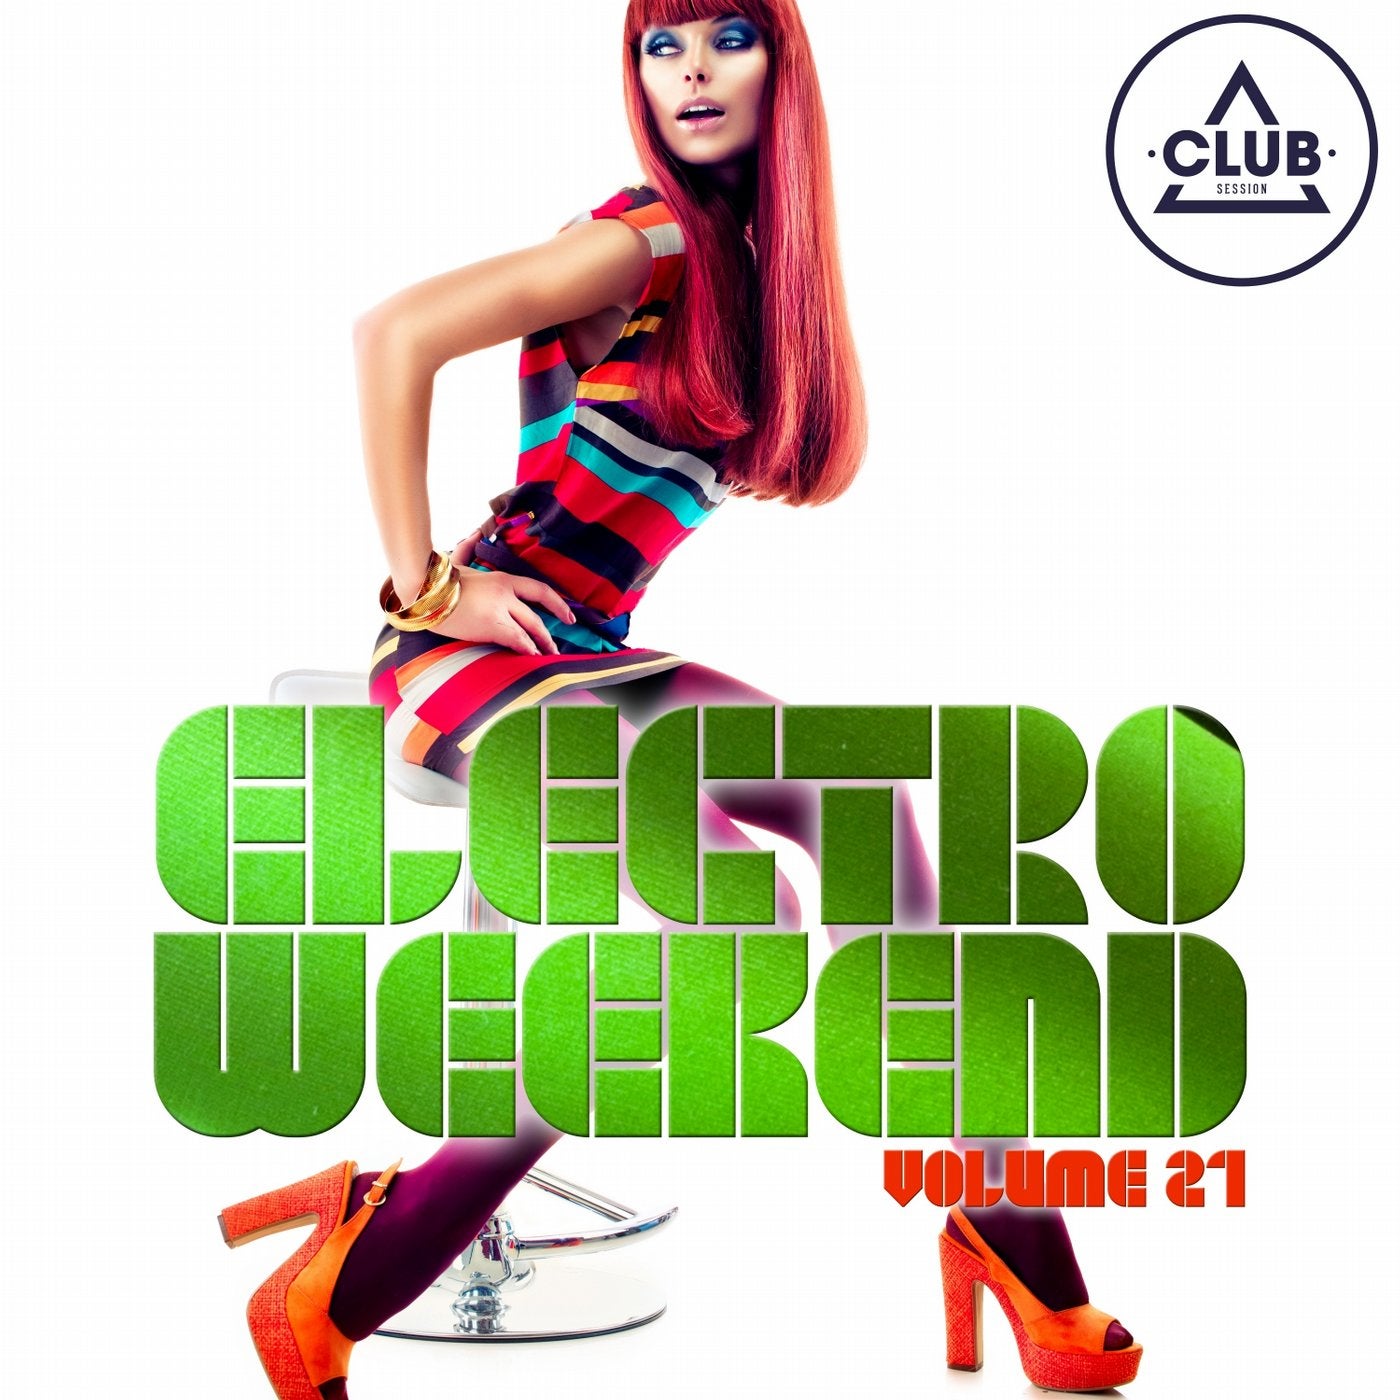 Electro Weekend Volume 21